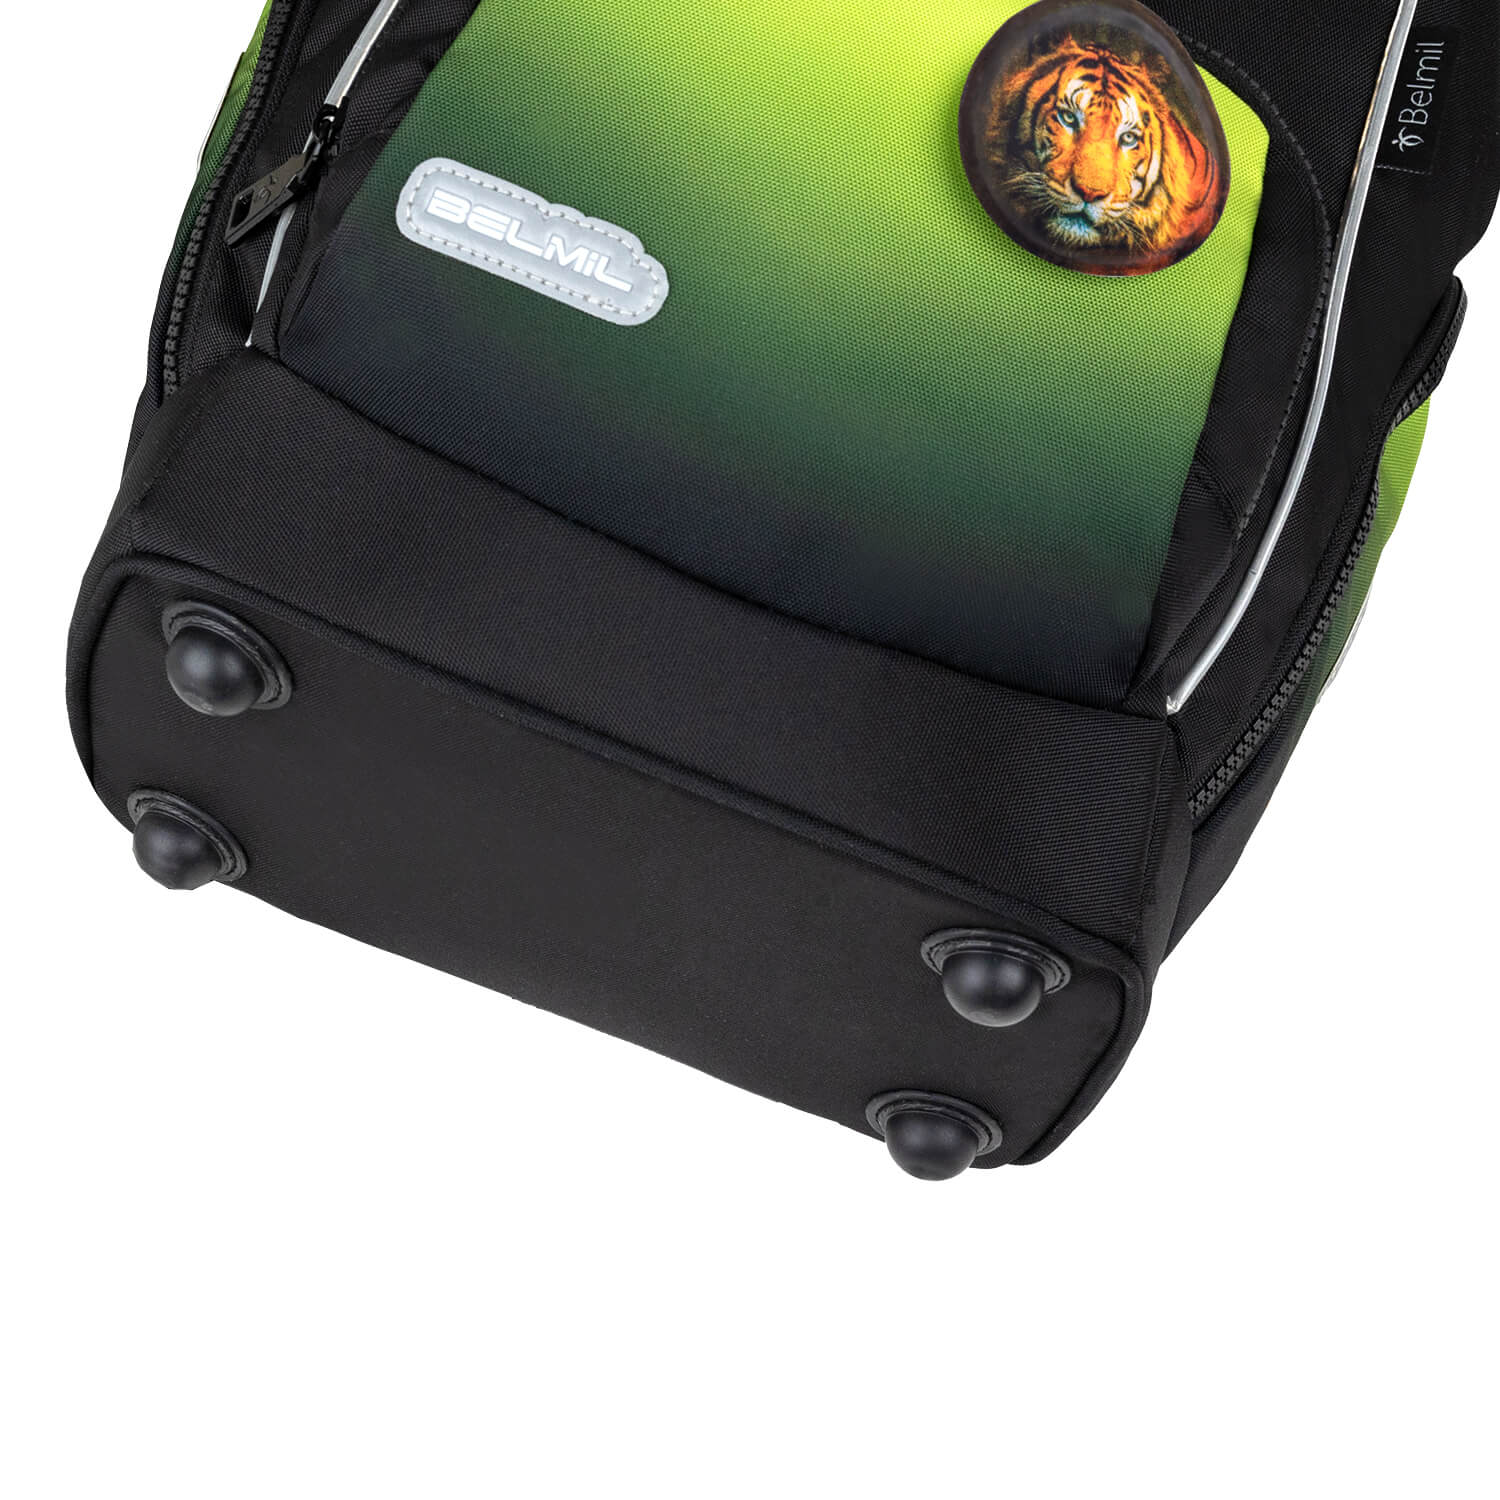 Rucksack Comfy Plus Premium Schulranzen Set 5-teile Black Green Tasche